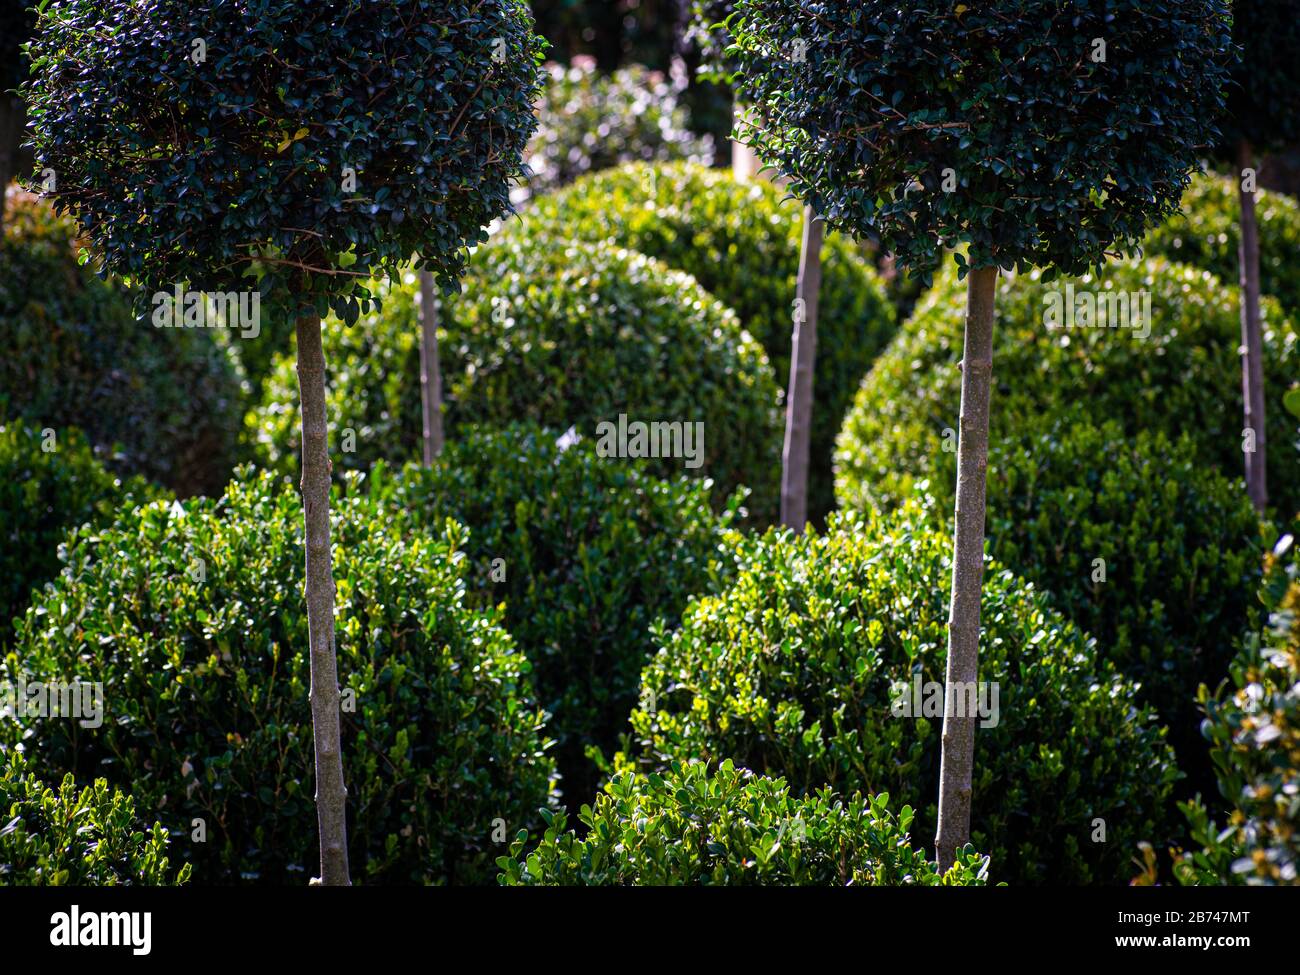 sfondo astratto di piante di scatola tondo e standard rifilate in forme rotonde, concetto giardinaggio. Foto Stock